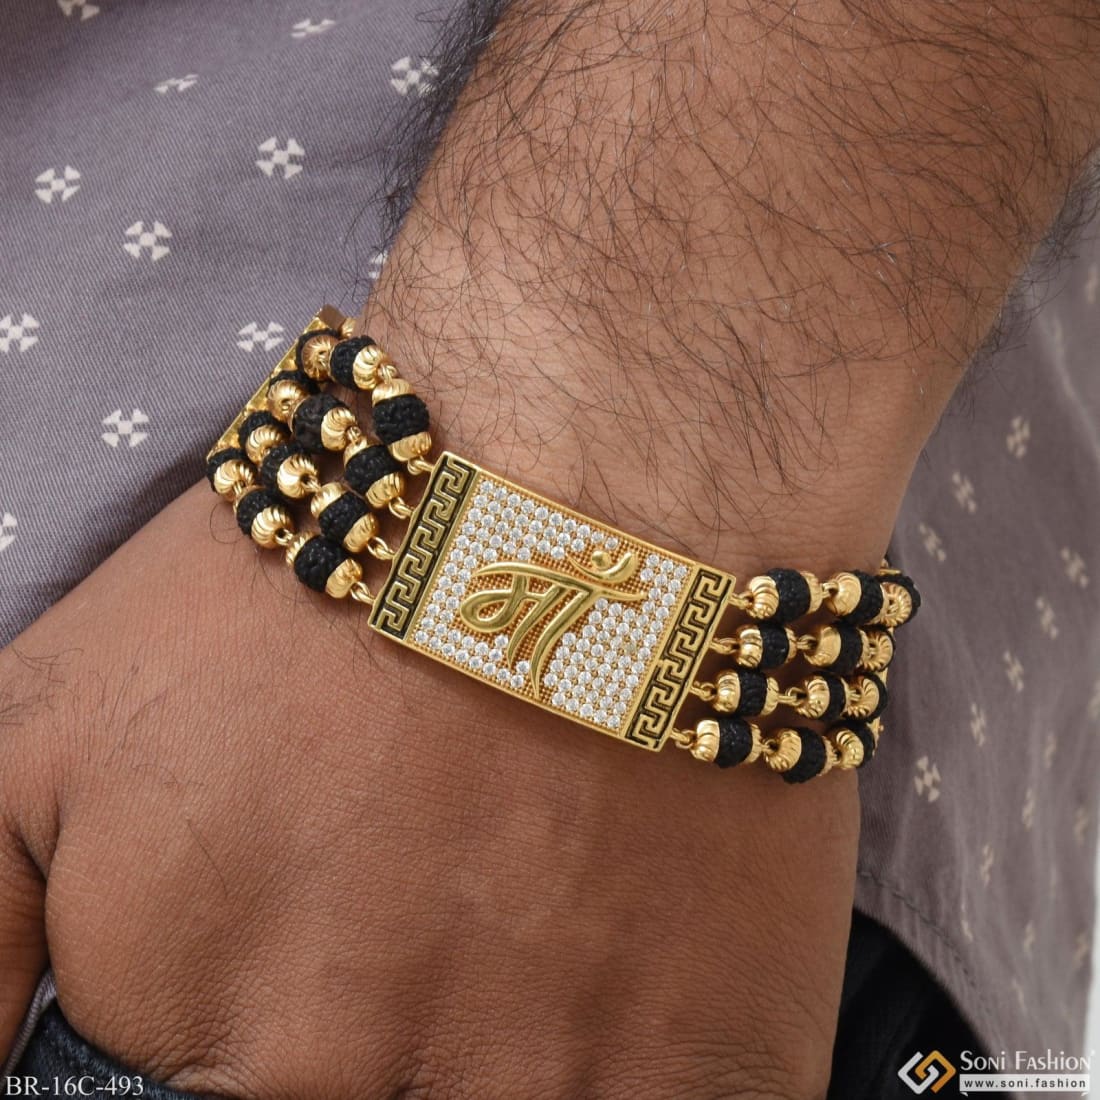 Men's Bracelet, Cuff Bracelet Men, Gold Bangle Bracelet, Bangle Bracelet Men,  Gift for Him, Made in Greece, by Christina Christi Jewels. - Etsy | Mens  bracelet gold jewelry, Mens gold bracelets, Man